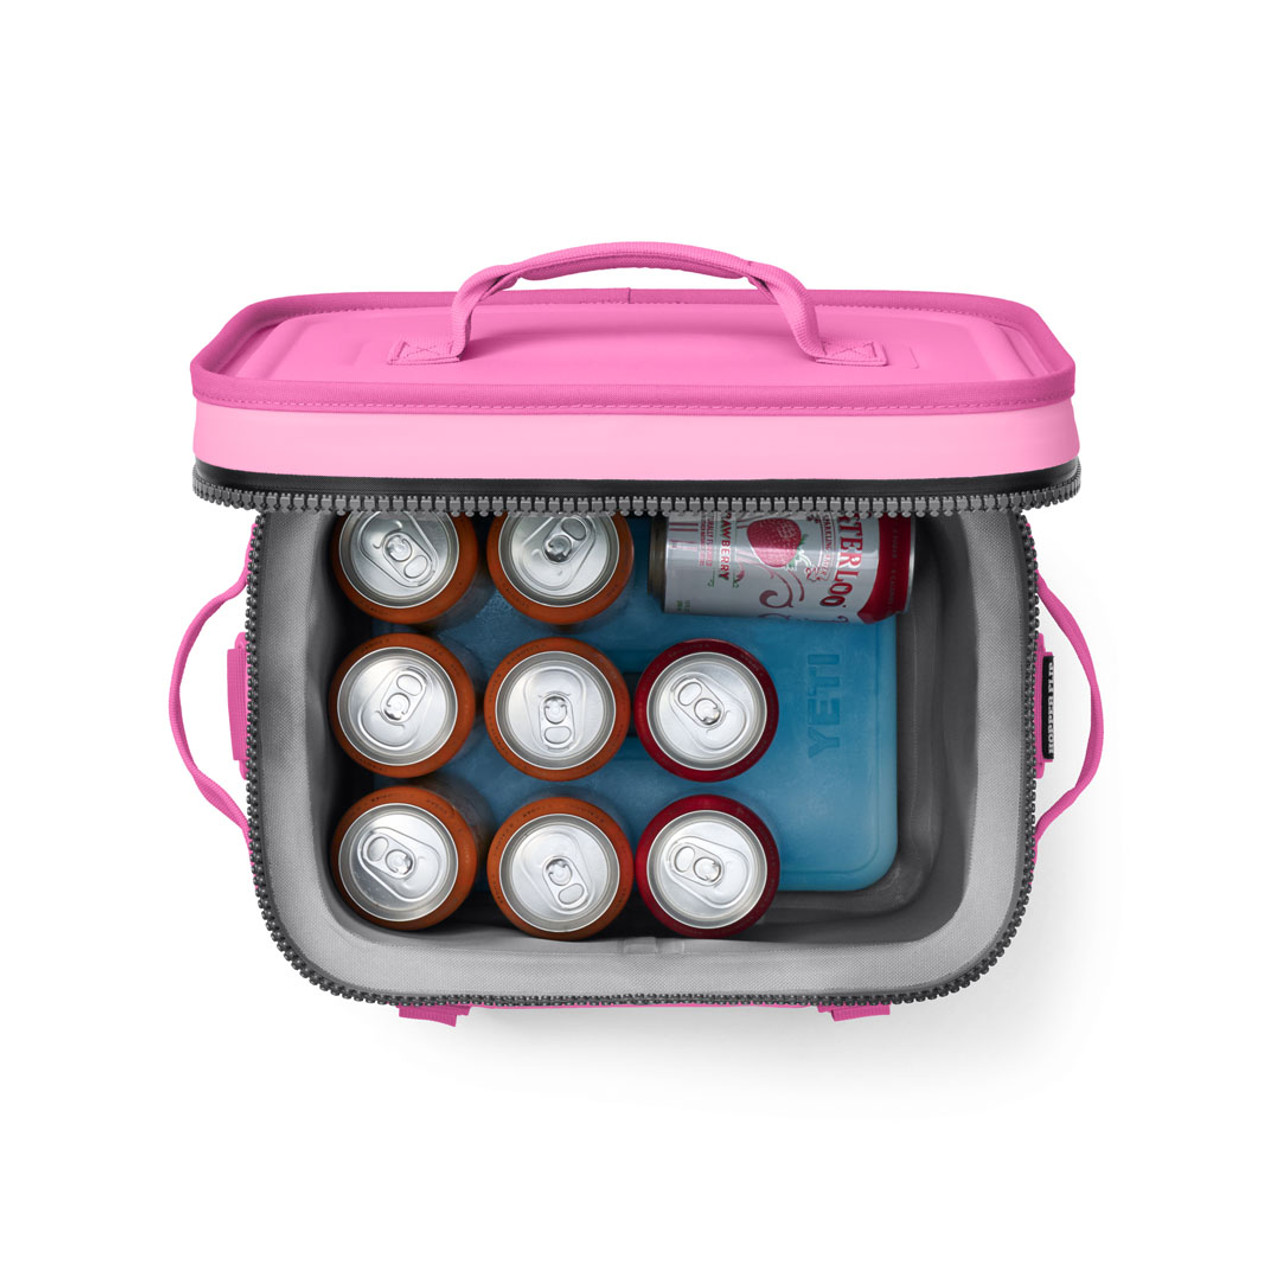 YETI Hopper Flip 12 Portable Soft Cooler, Bimini Pink–